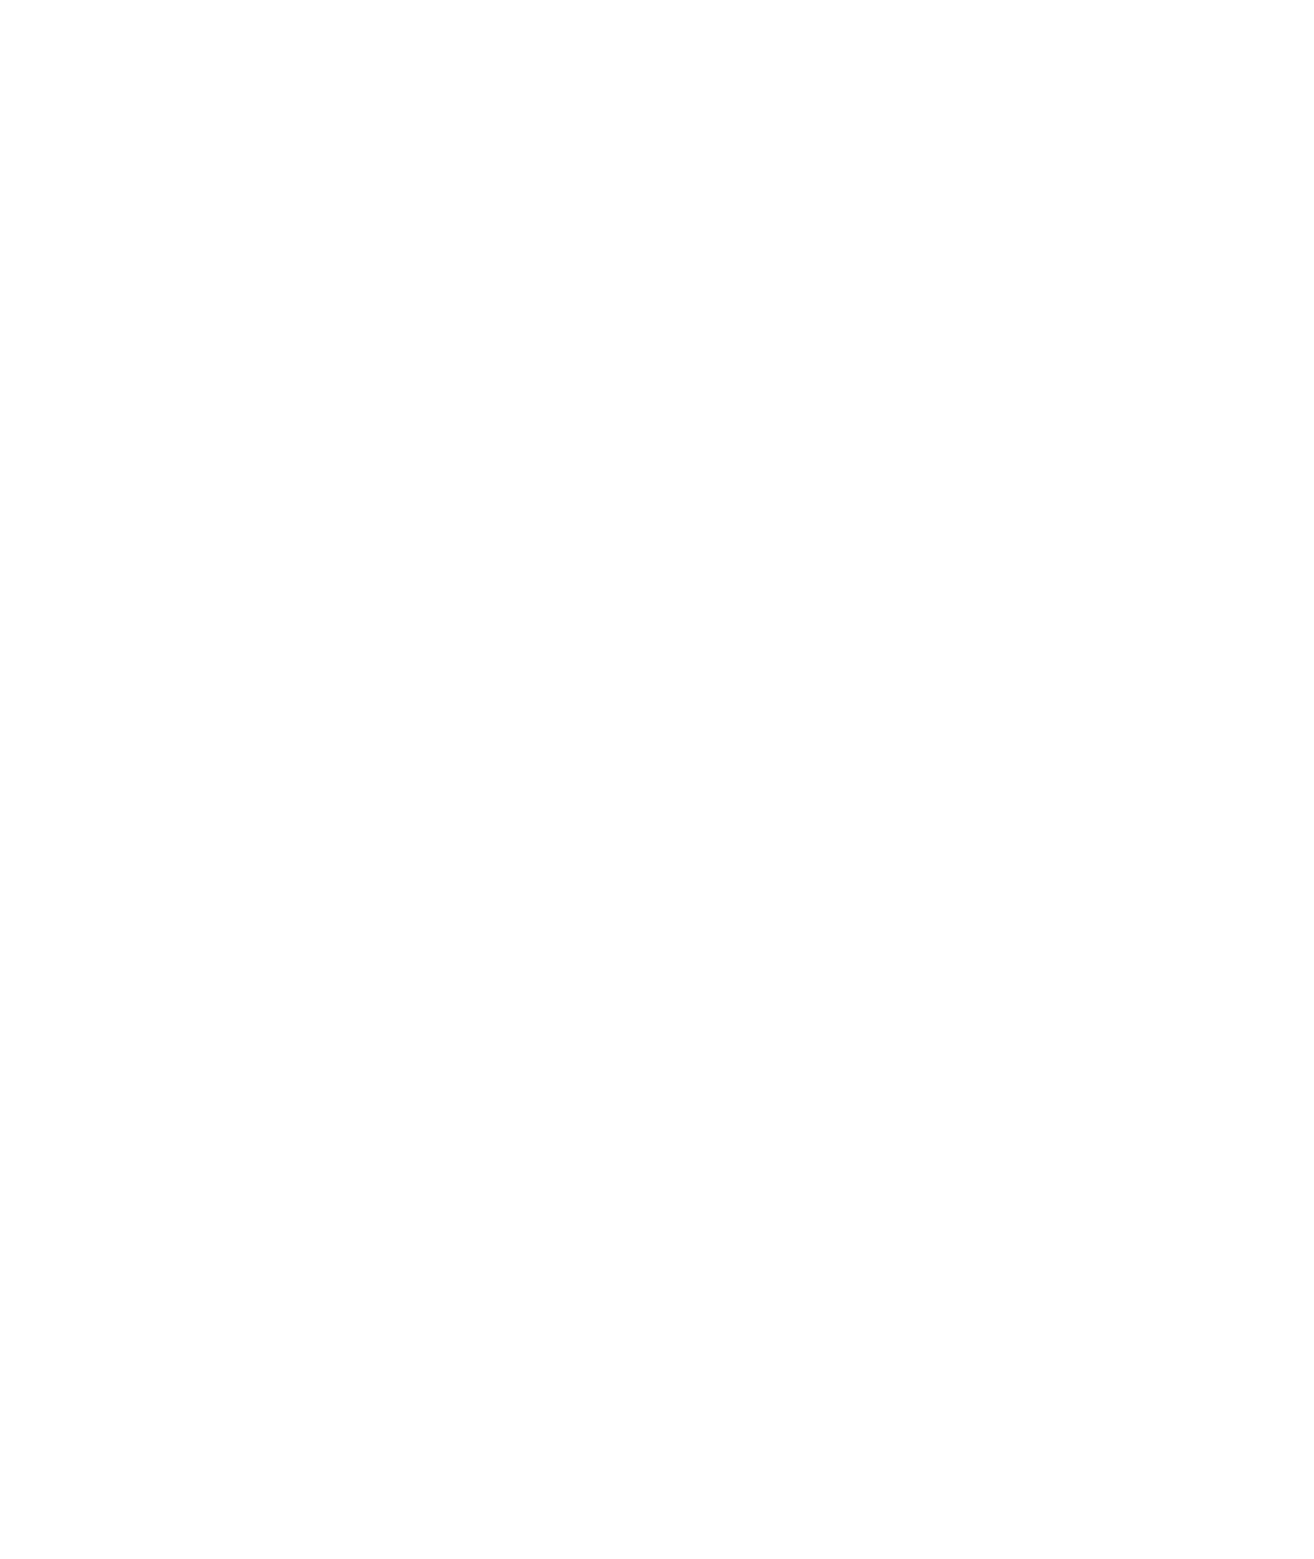 Asiasoft logo pour fonds sombres (PNG transparent)